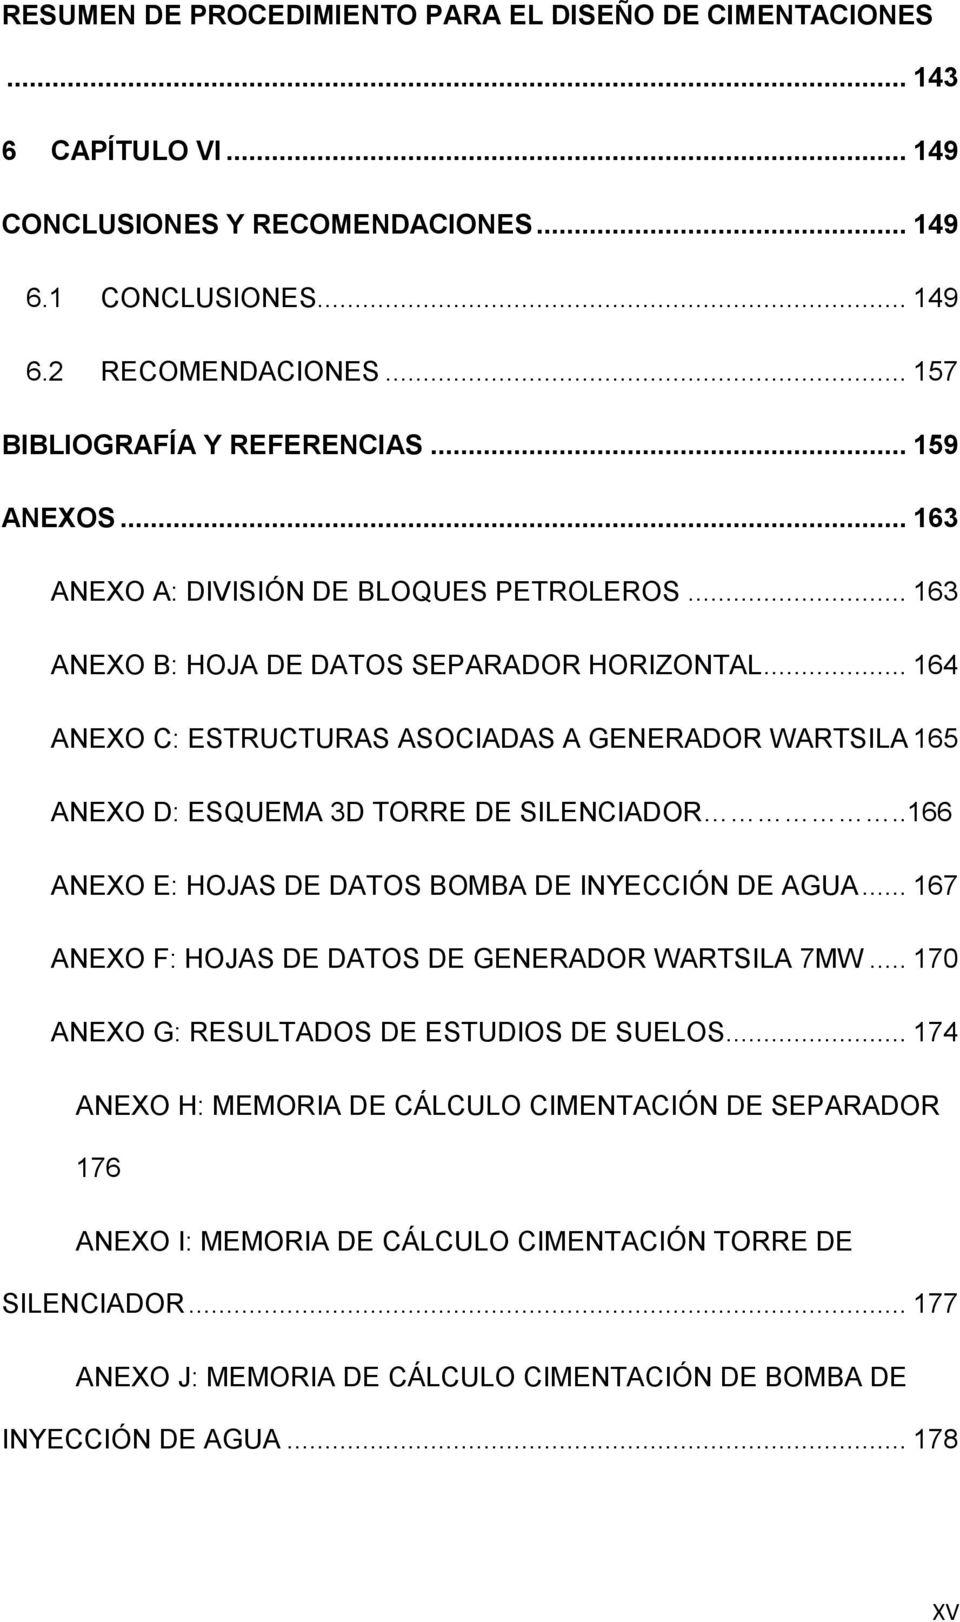 ANEXO D: ESQUEMA 3D TORRE DE SILENCIADOR..166 6. ANEXO E: HOJAS DE DATOS BOMBA DE INYECCIÓN DE AGUA... 167 7. ANEXO F: HOJAS DE DATOS DE GENERADOR WARTSILA 7MW... 170 9.